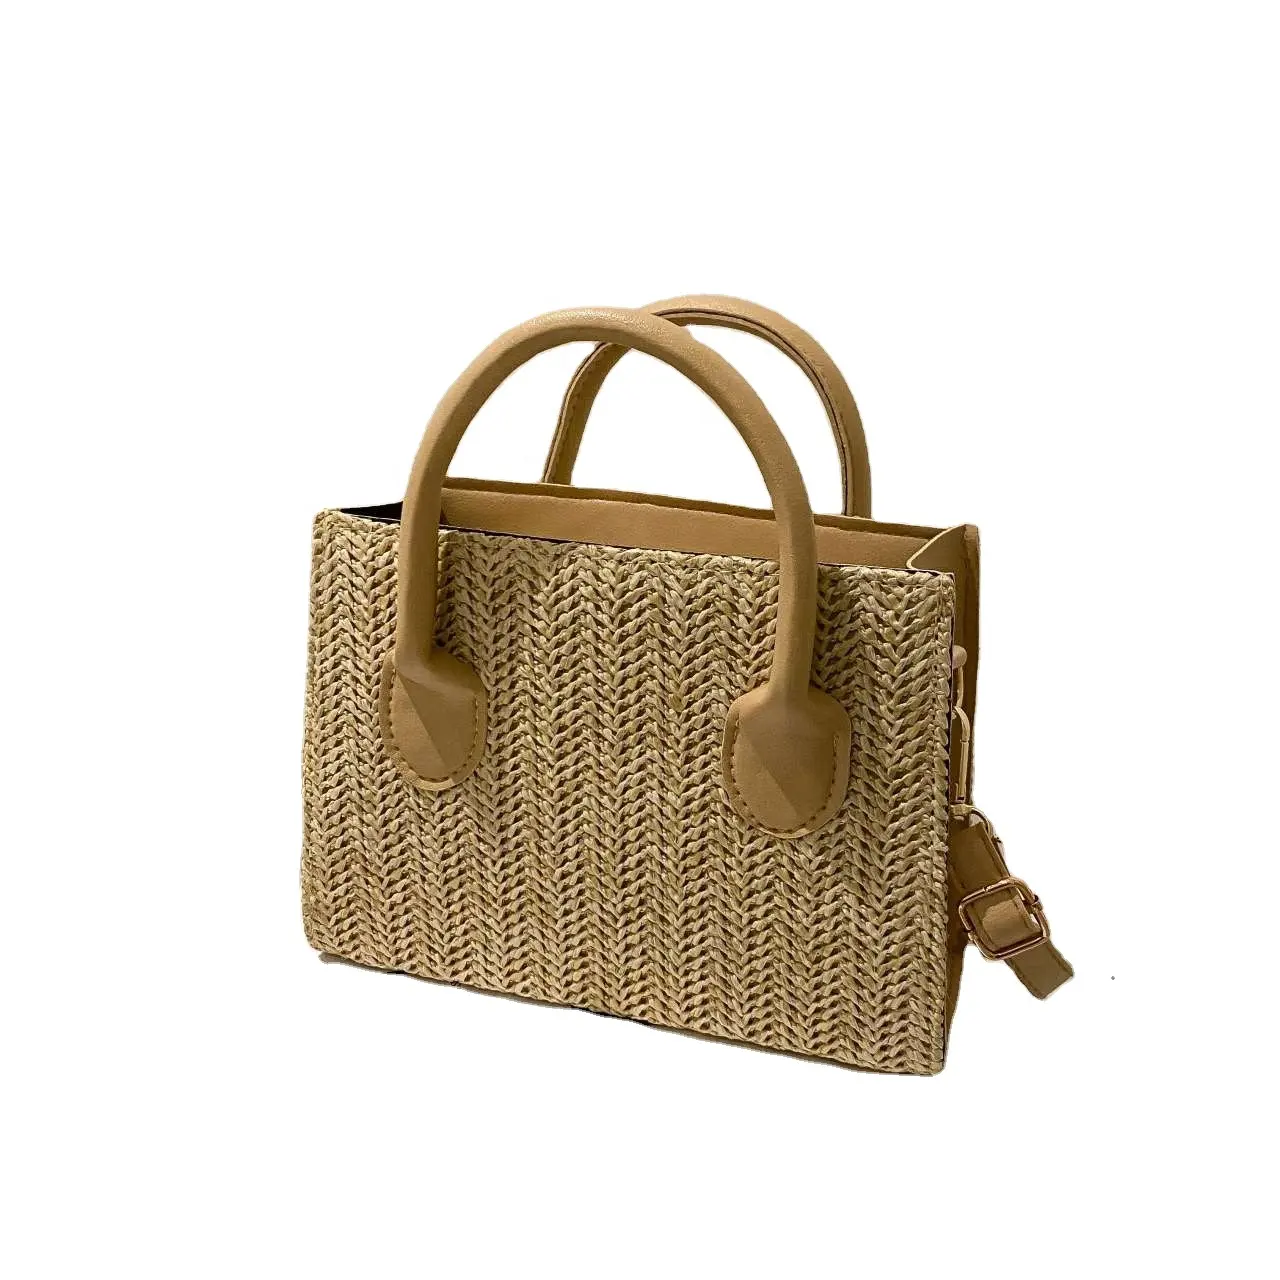 2024 оптовая цена, высококачественные дизайнерские сумки с красивым оригинальным чехлом, роскошные сумки известных брендов для мужчин и женщин